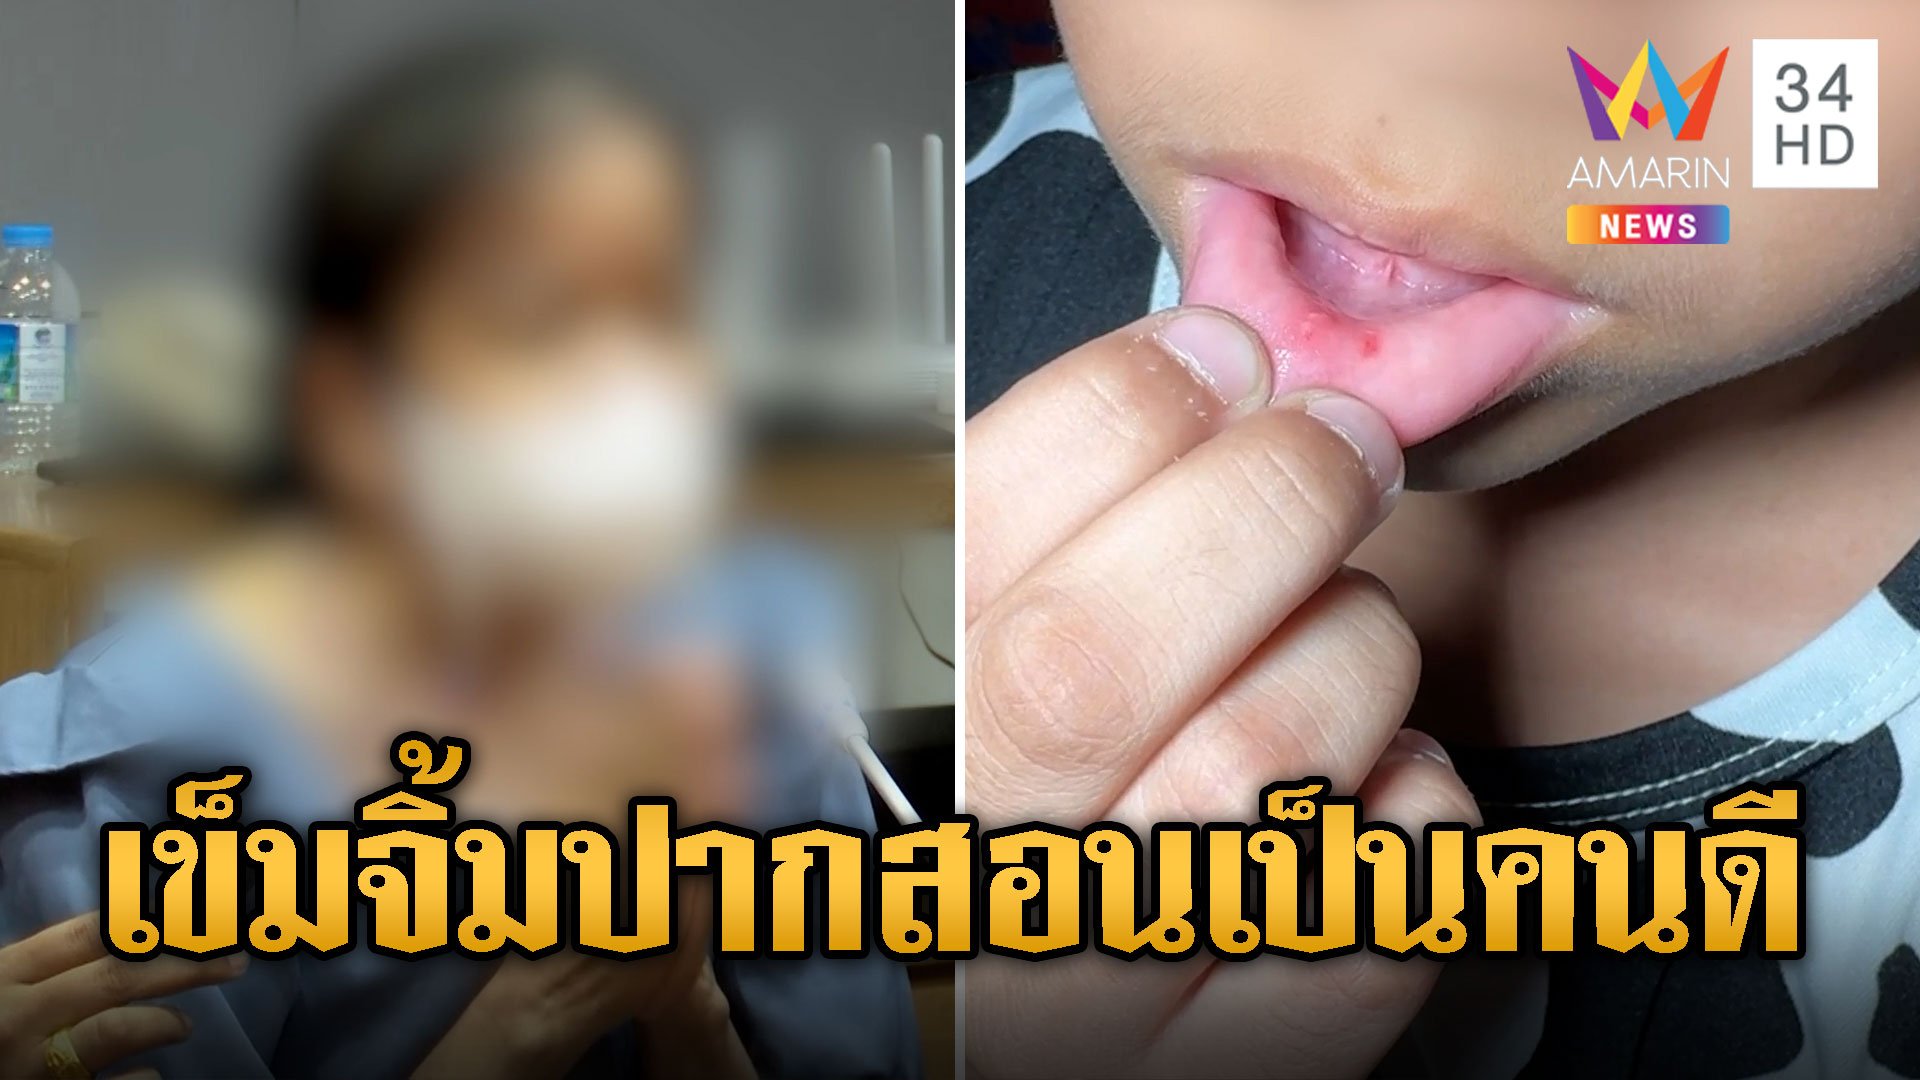 ครูปุ๊กยอมรับผิด ใช้เข็มจิ้มปากเด็ก ไม่รู้ว่าเจ็บแค่อยากสอนให้เป็นคนดี | ข่าวอรุณอมรินทร์ | 27 ม.ค. 67 | AMARIN TVHD34